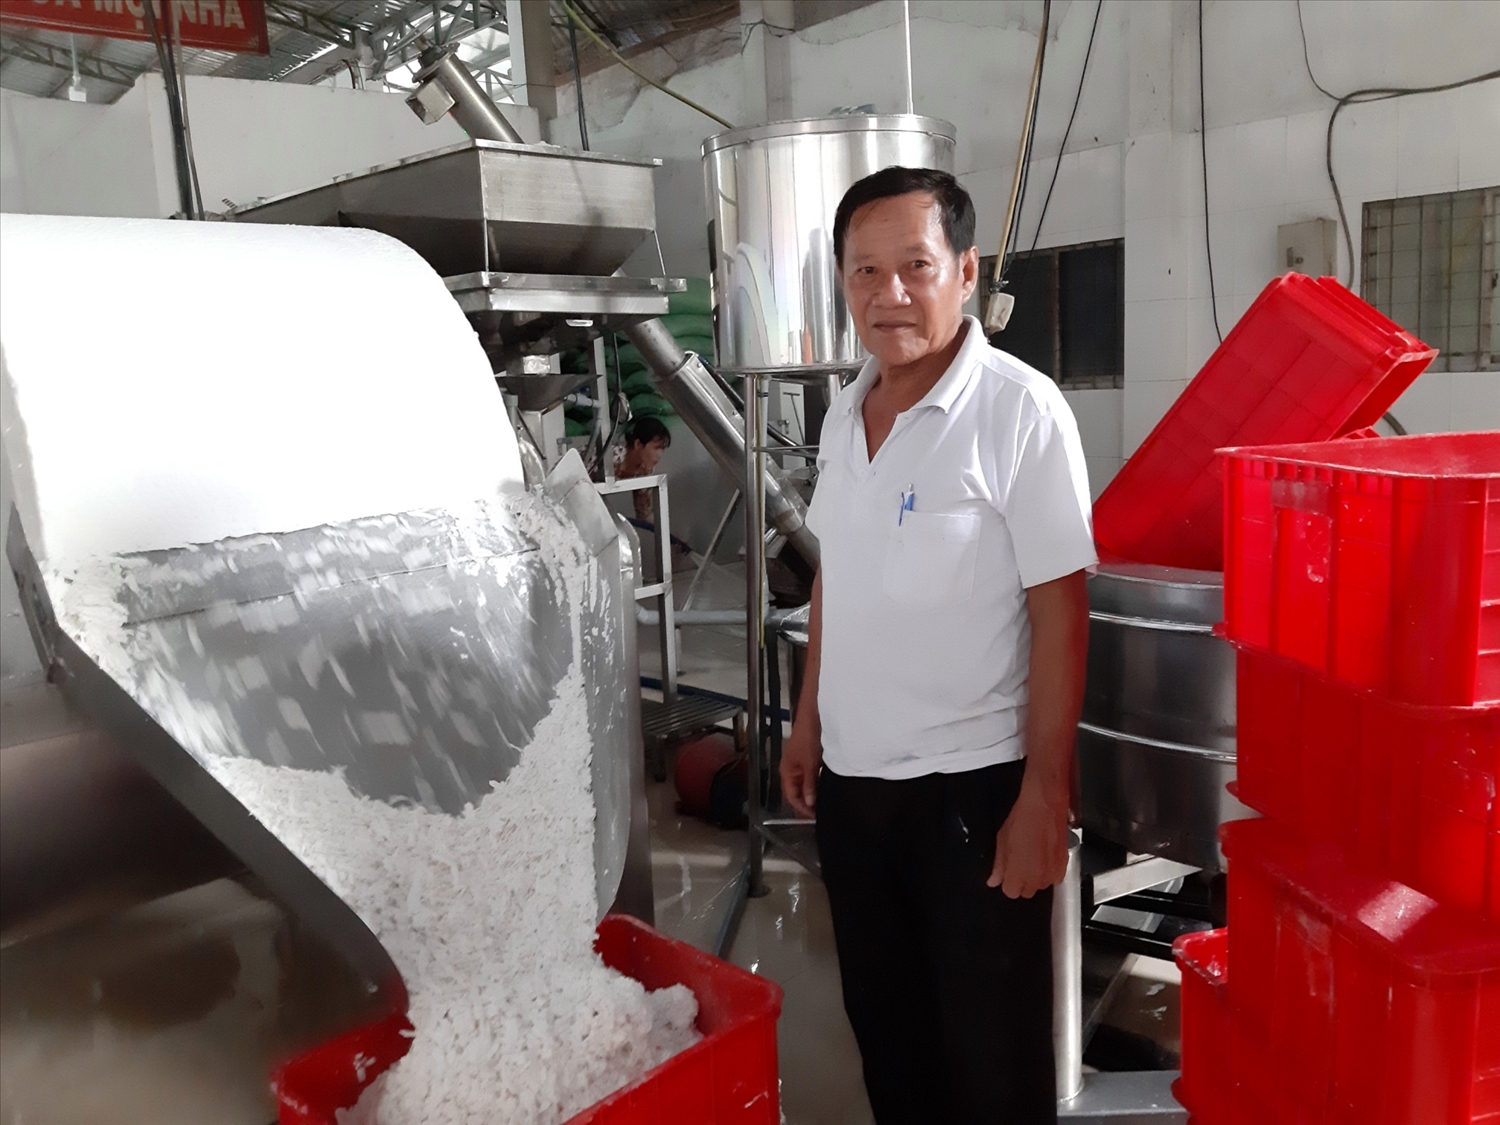 Ông Huỳnh Văn Chót, Giám đốc HTX bánh tráng Mỹ Lồng đang vận hành quy trình xay bột cung cấp cho xã viên sản xuất bánh tráng.